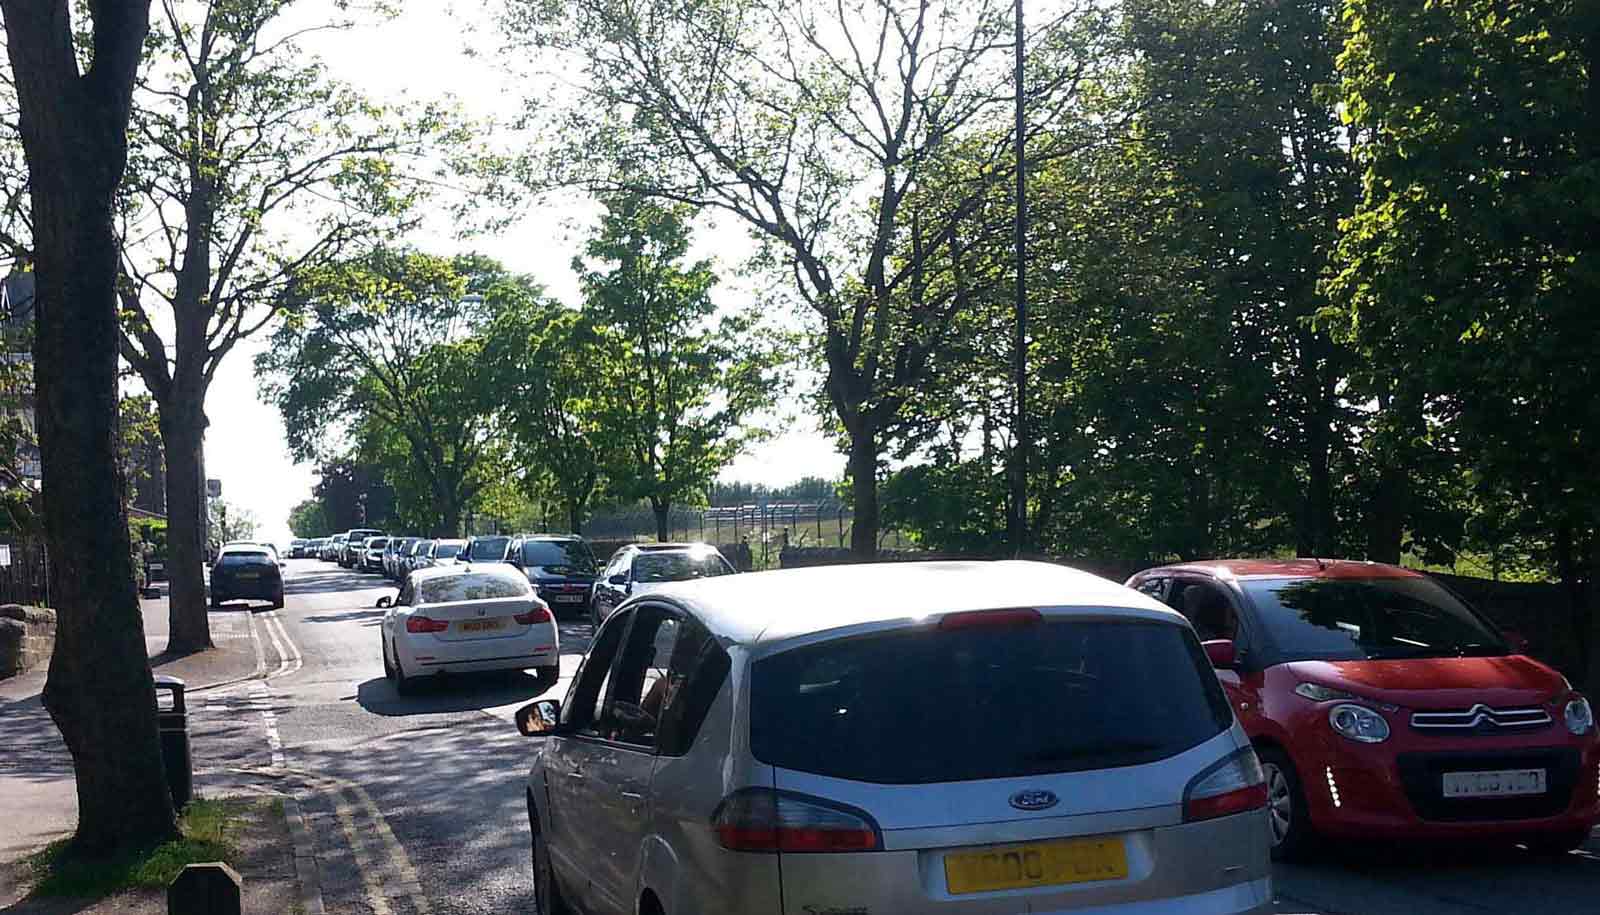 Congestion on Otley Road in Harrogate